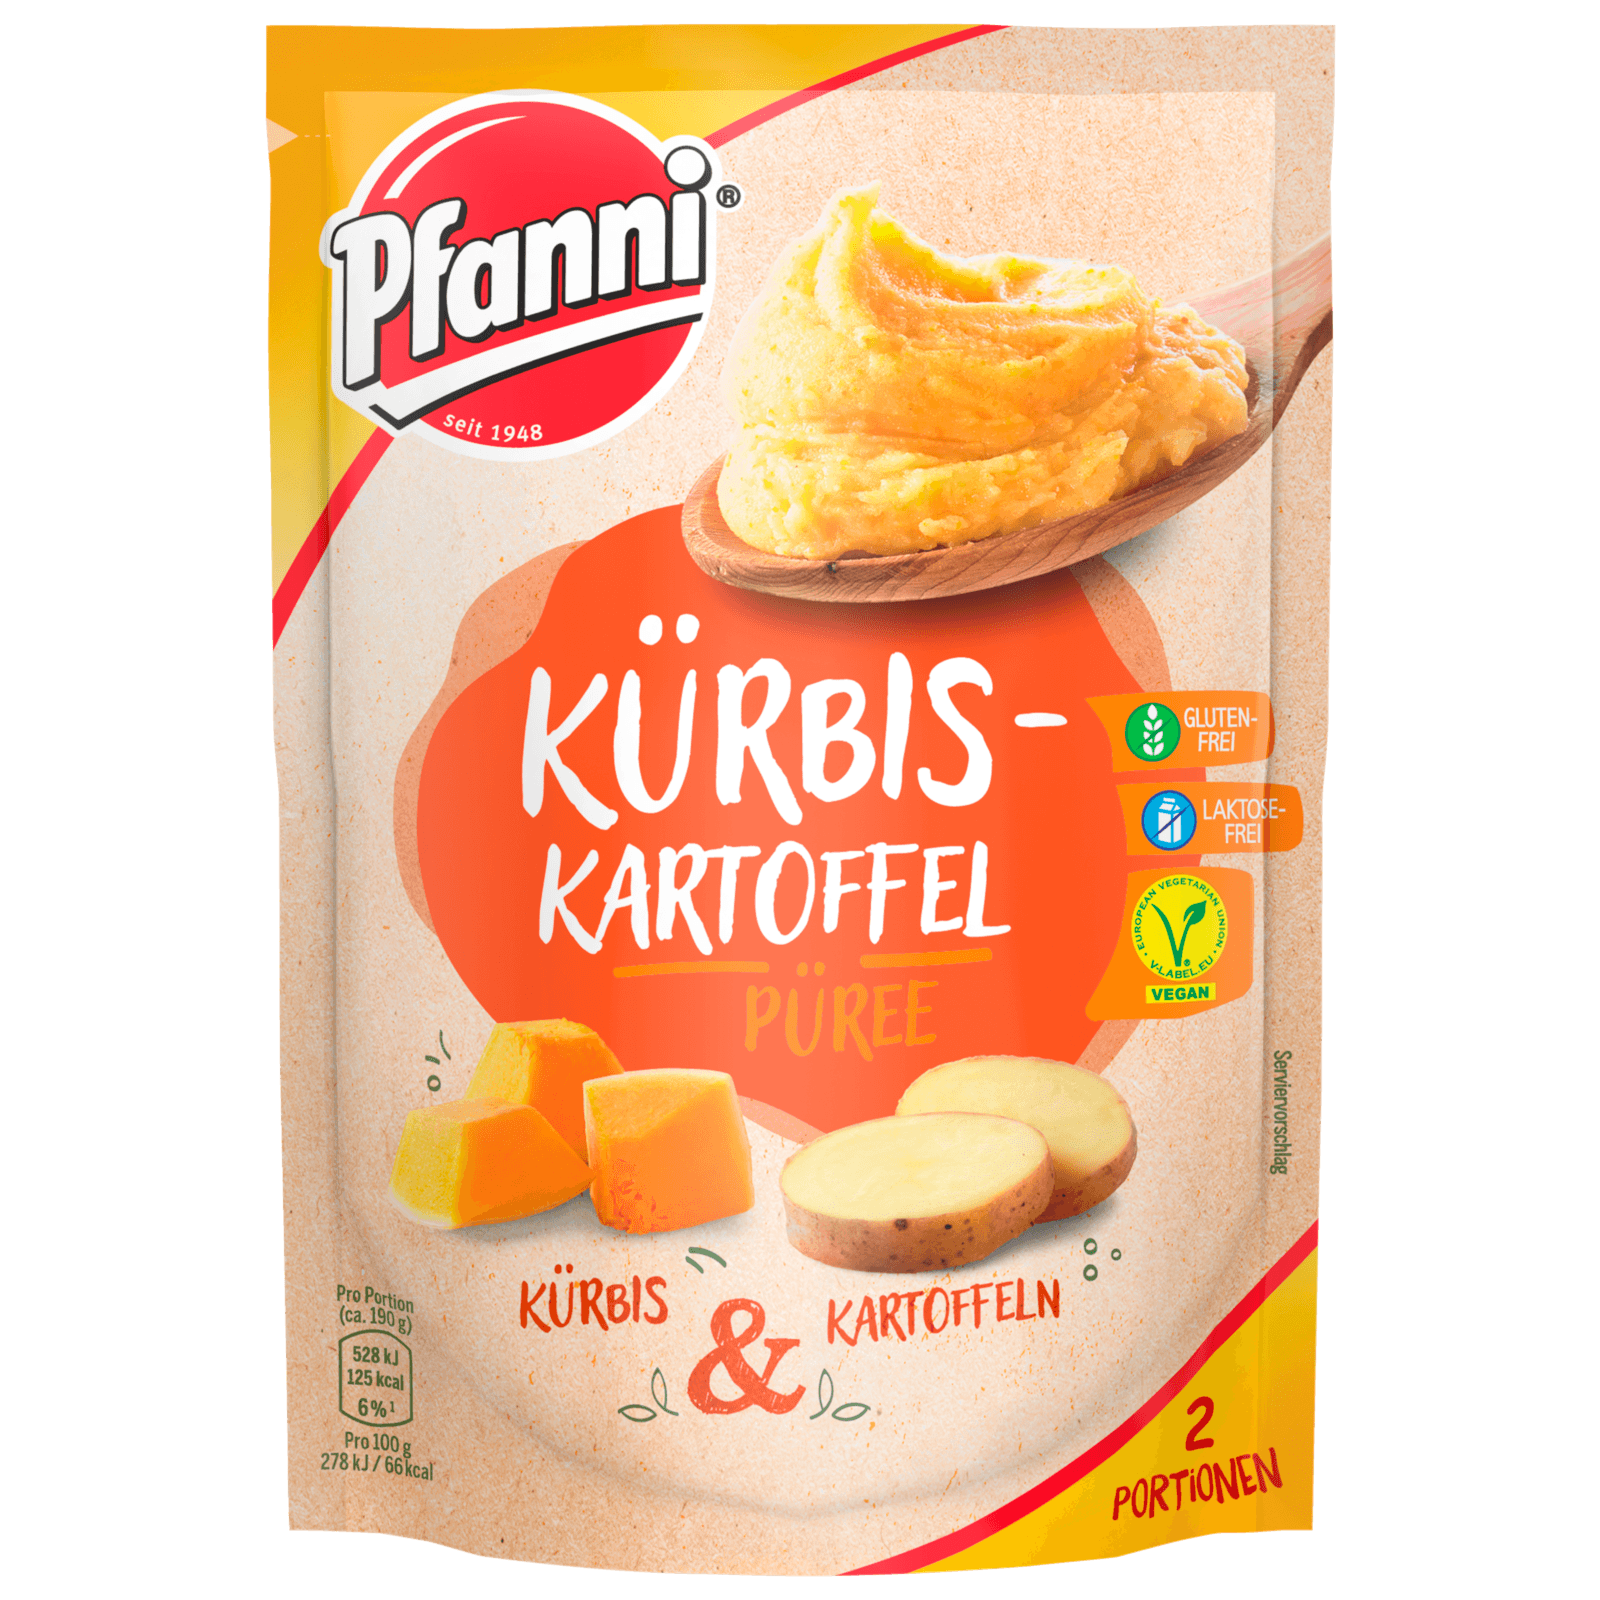 Pfanni Kürbis-Kartoffelpüree 60g bei REWE online bestellen!